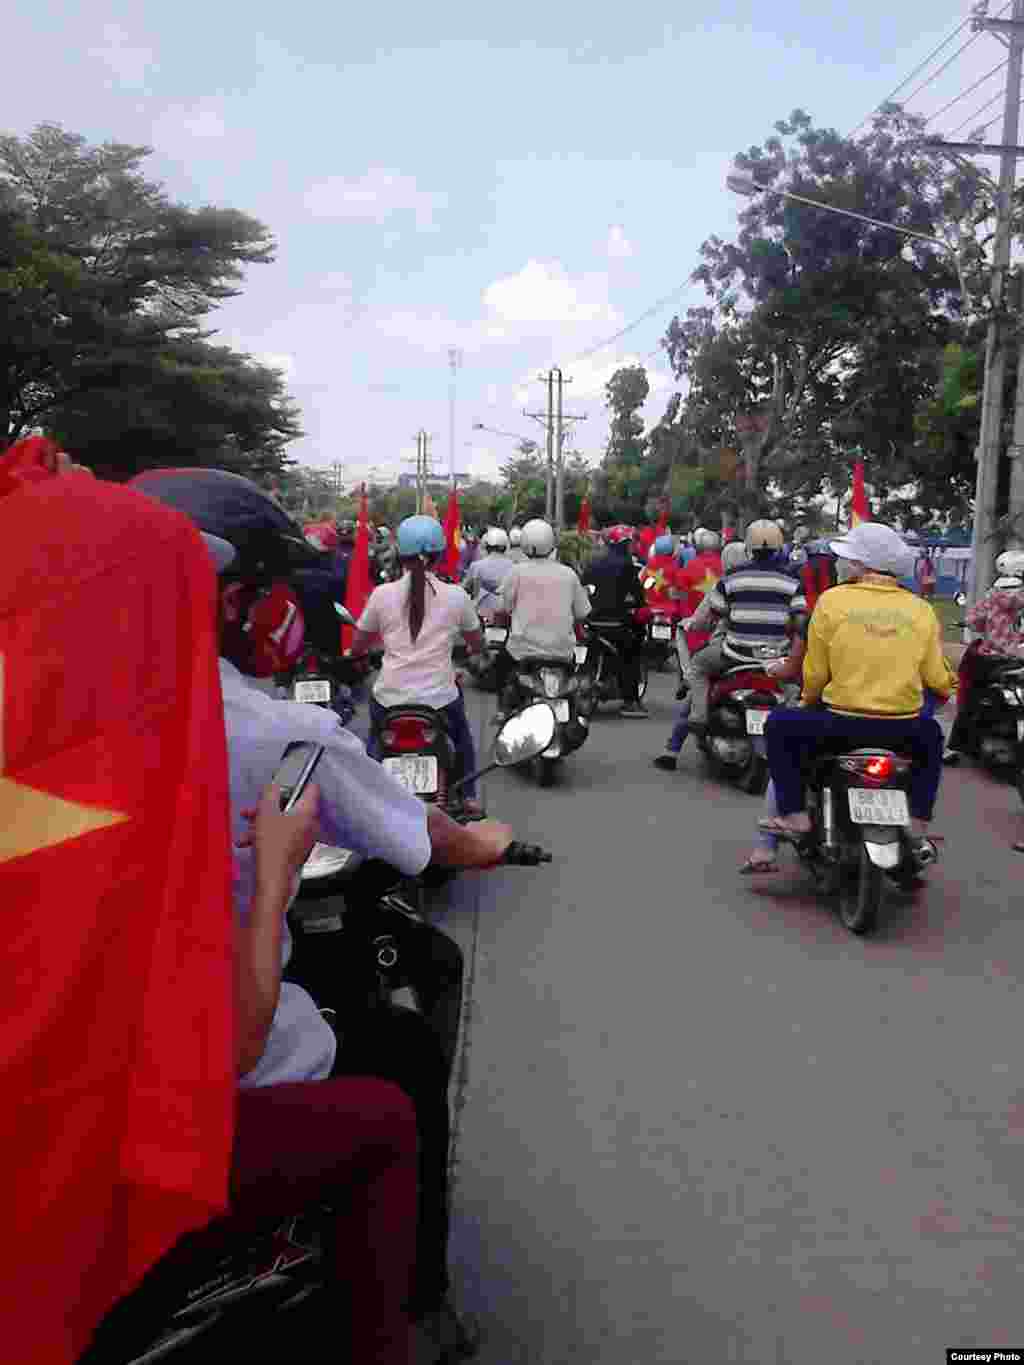 Protesters gathered at Amata Industrial Park, Bien Hoa City, Dong Nai Province, Vietnam.